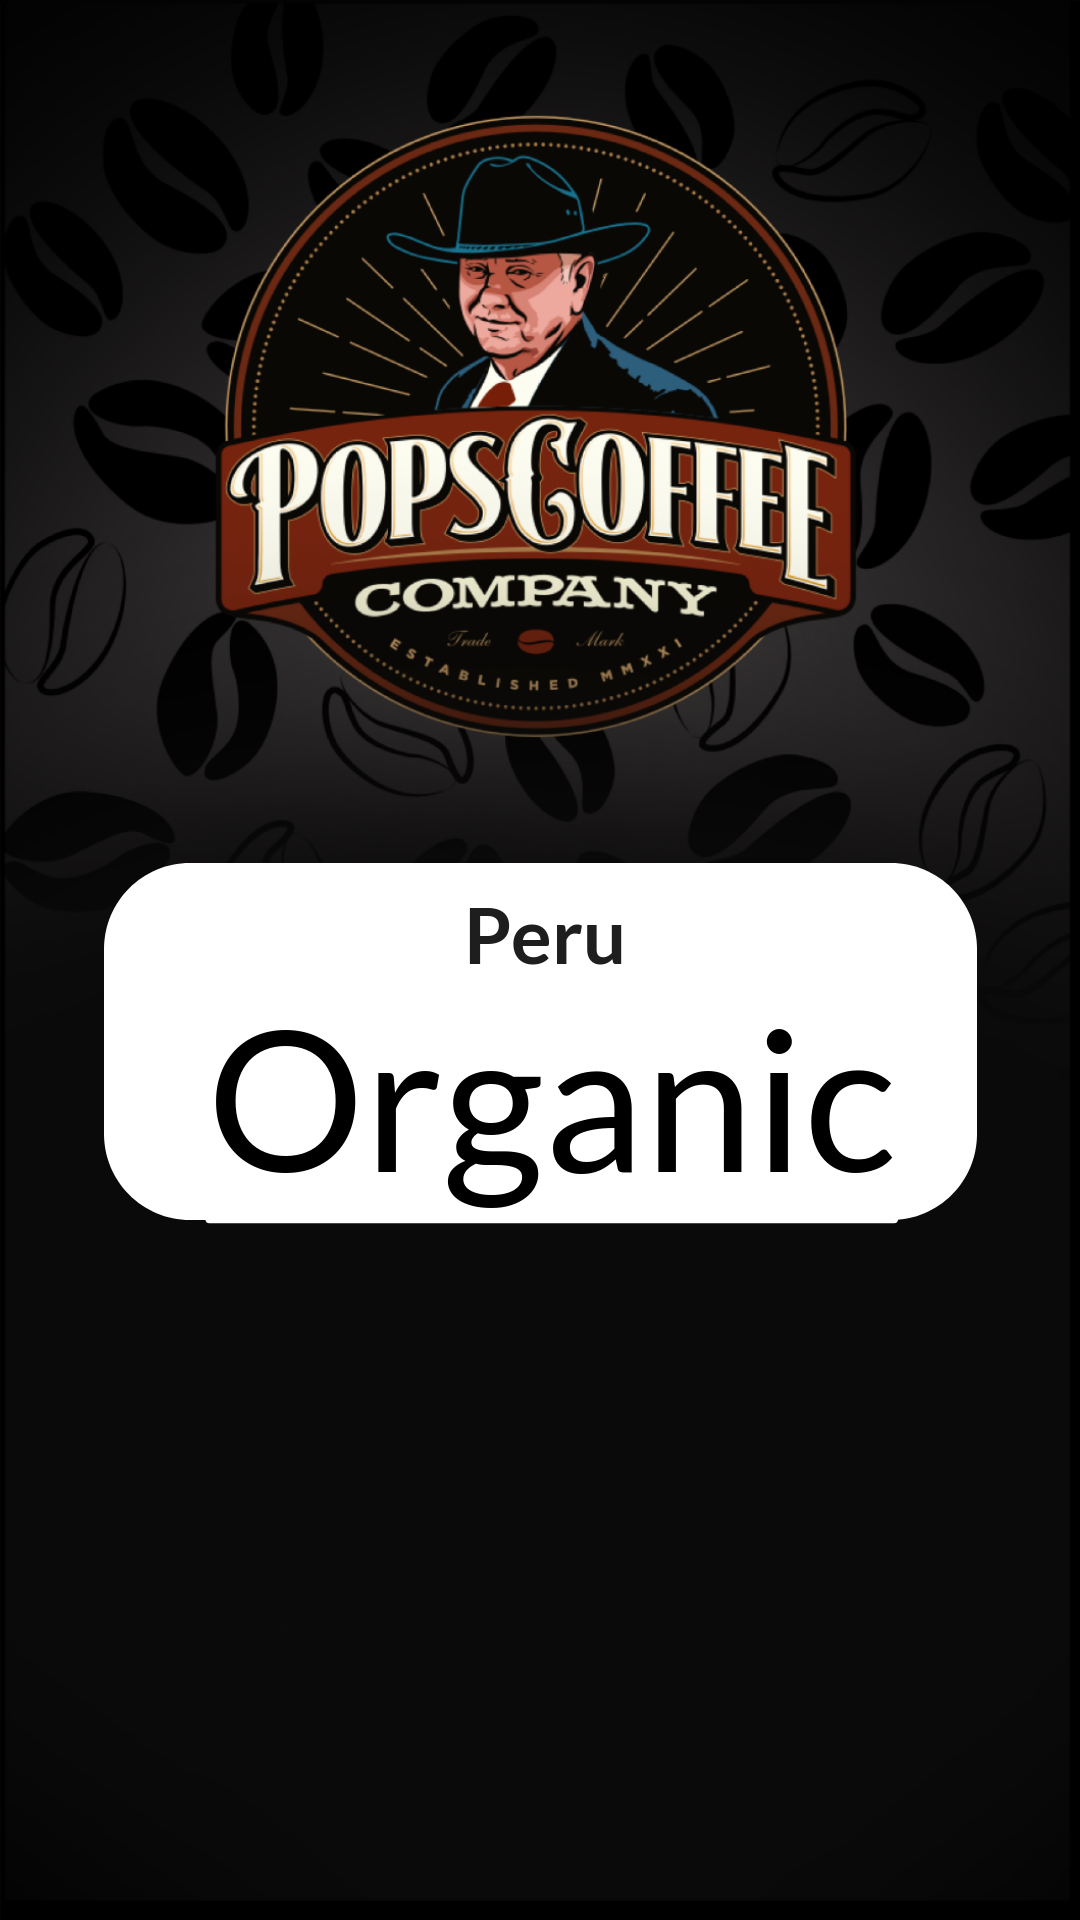 Peru - Organic